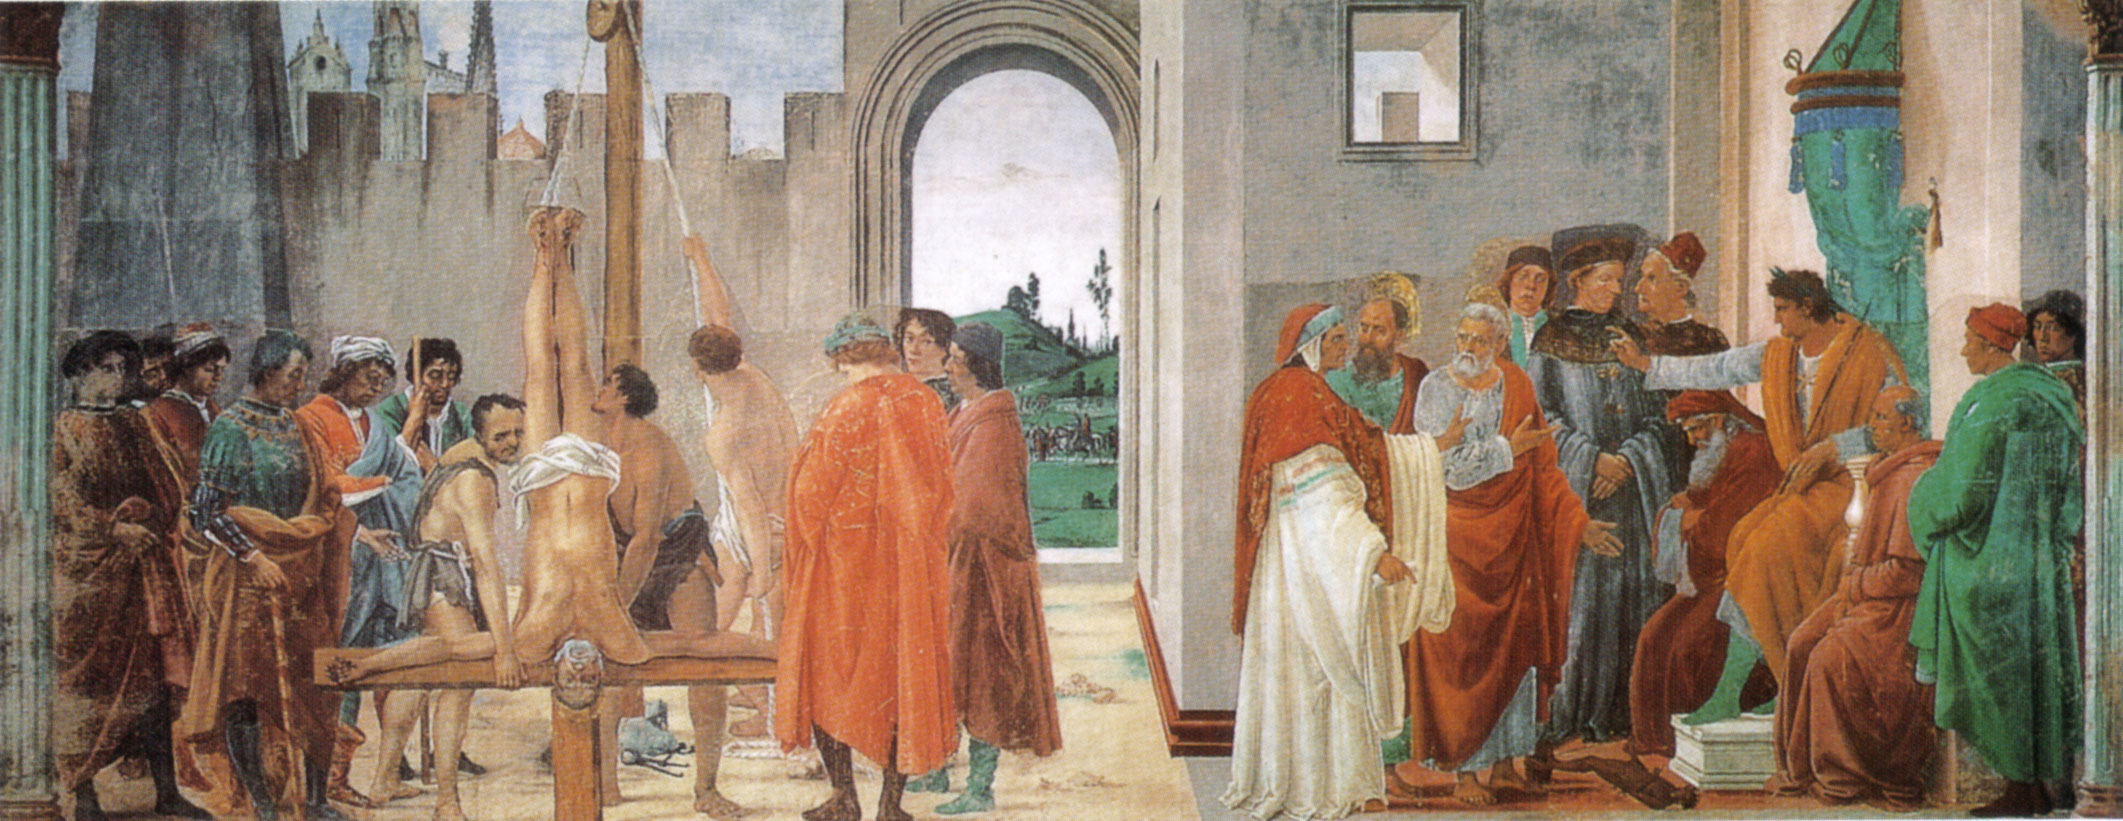 Filippino Lippi, Disputa con Simon Mago e Crocifissione di san Pietro
